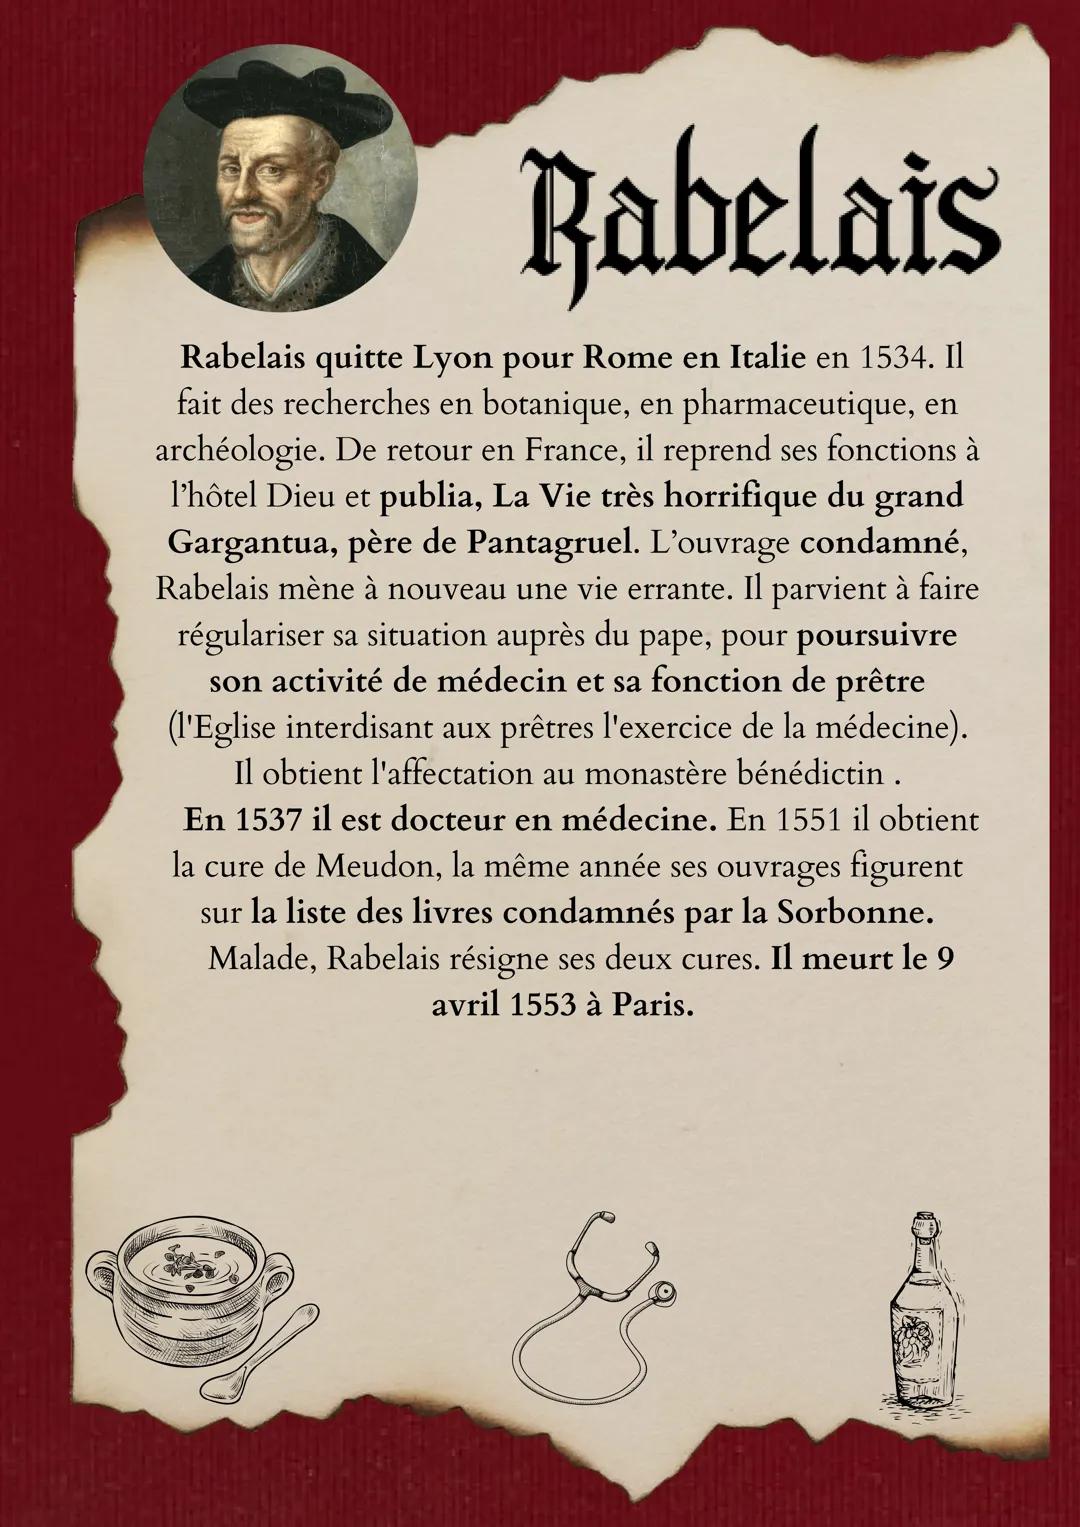 Rabelais
François Rabelais naît à La Devinière, près de Chinon
vers 1494. Son père est avocat et sénéchal de Lerné. On
ne sait rien de son e